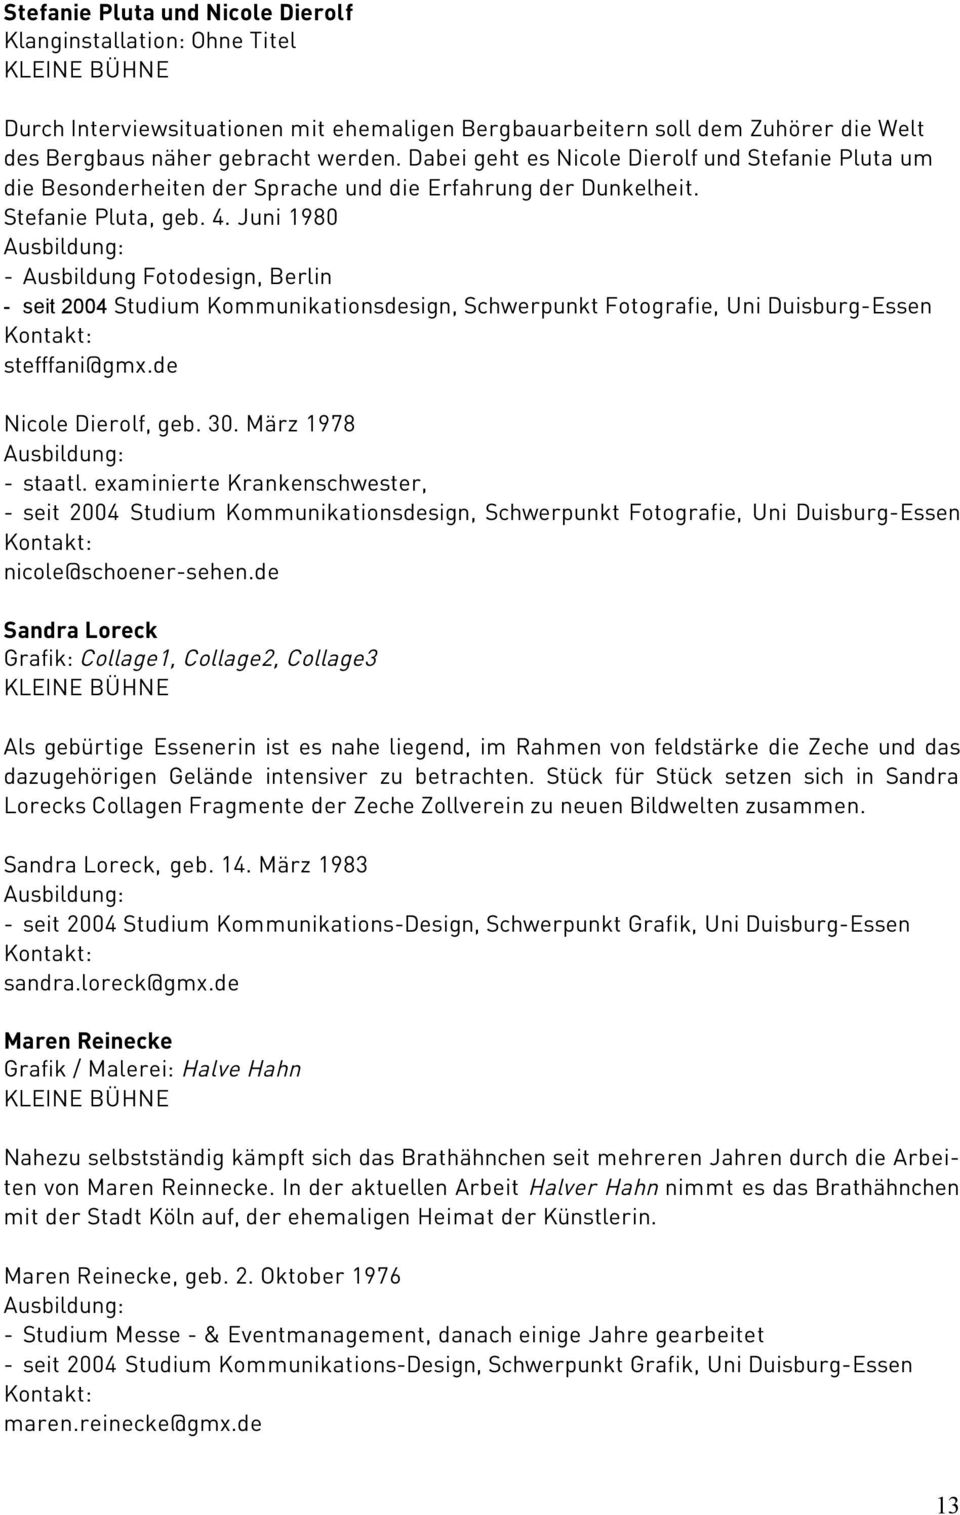 Juni 1980 - Ausbildung Fotodesign, Berlin - seit 2004 Studium Kommunikationsdesign, Schwerpunkt Fotografie, Uni Duisburg-Essen stefffani@gmx.de Nicole Dierolf, geb. 30. März 1978 - staatl.